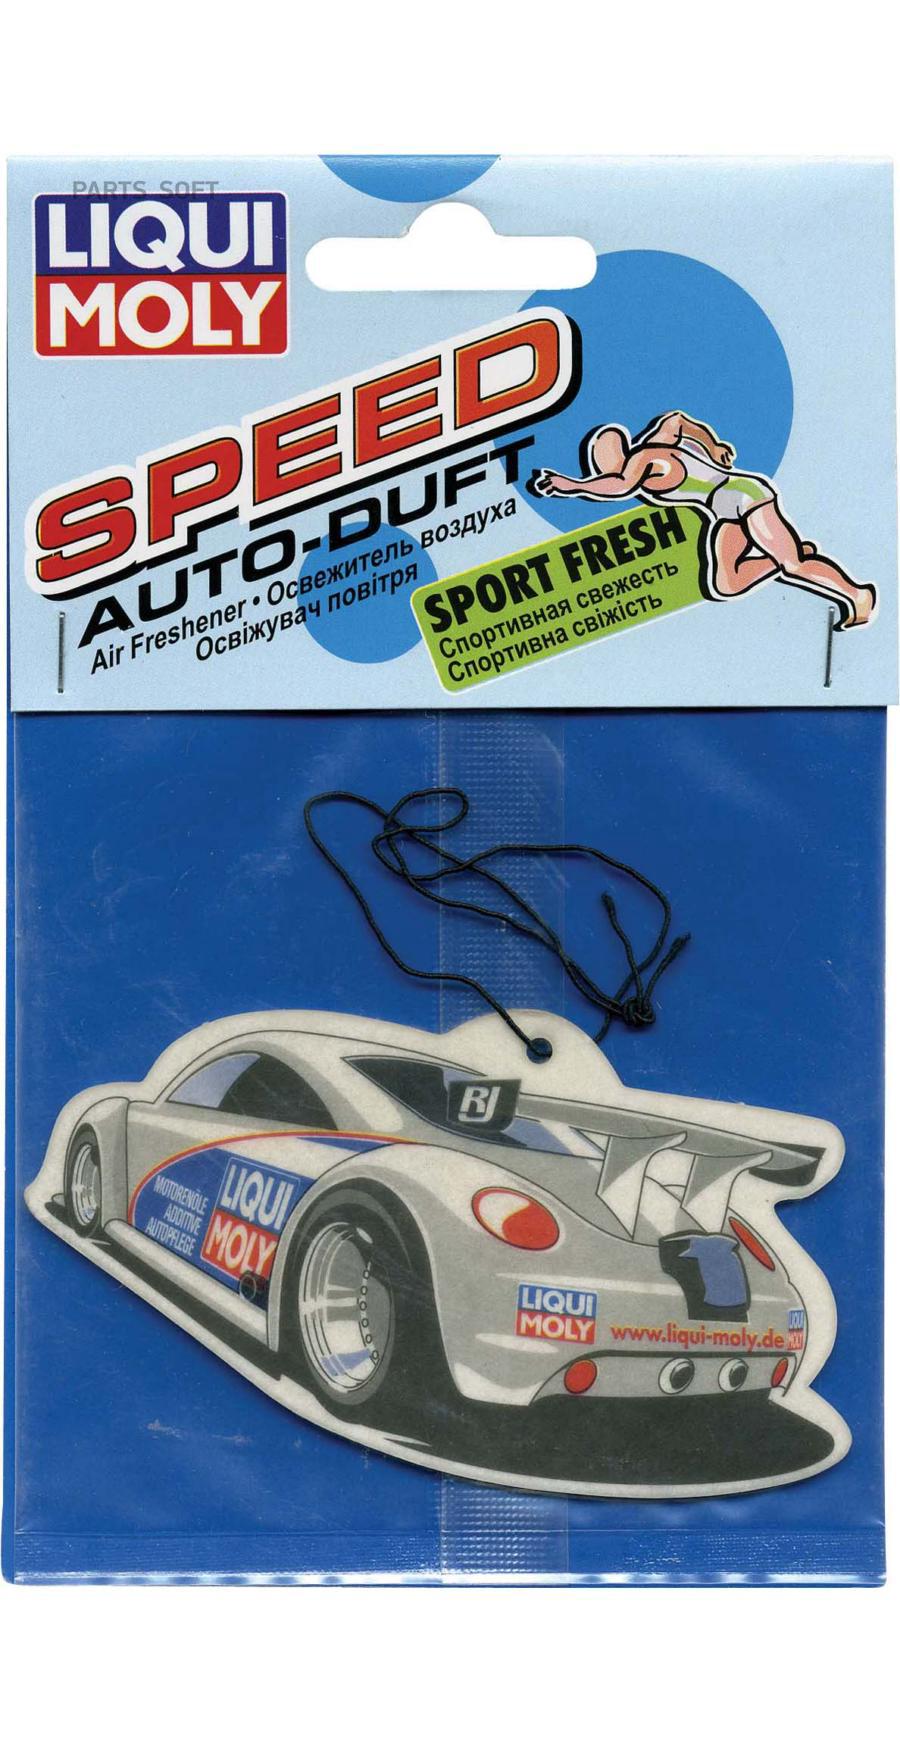 1664 LIQUI MOLY Освежитель воздуха (спортивная свежесть) Auto-Duft  Speed (SportFresh)